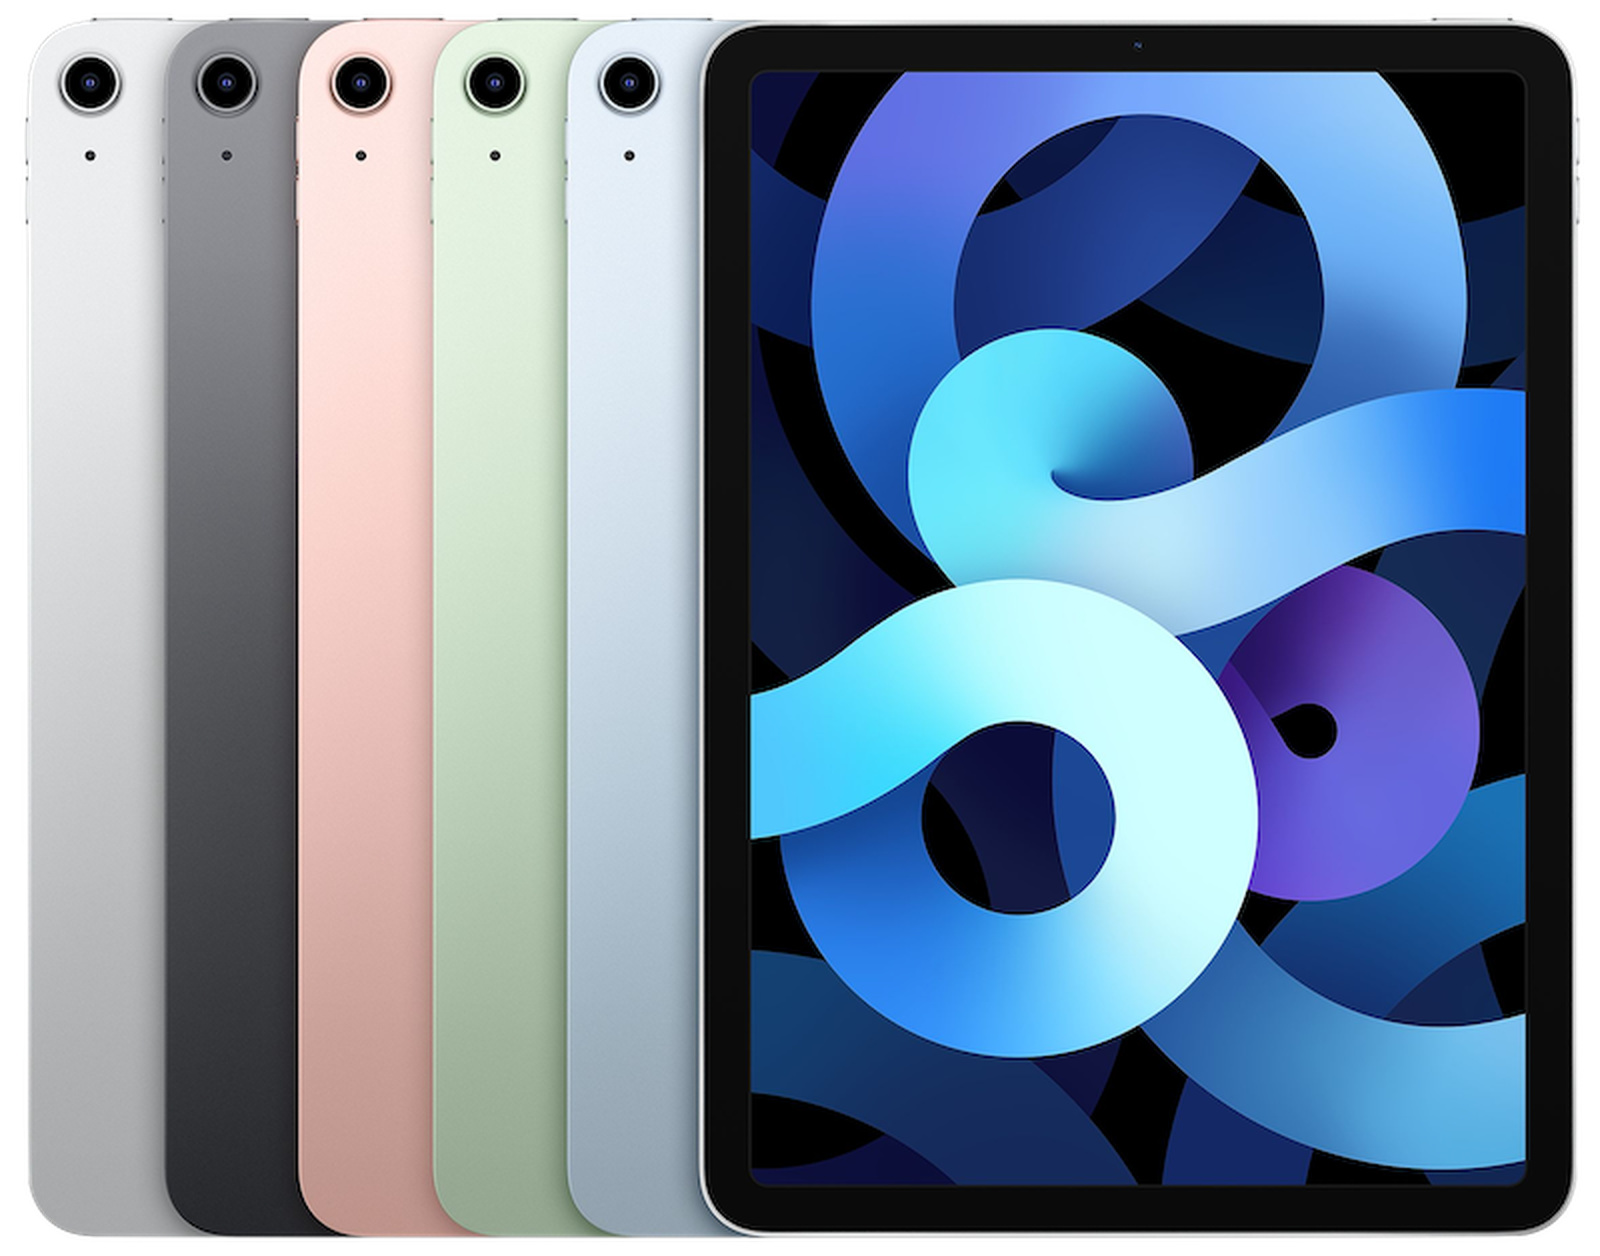 消息称新款 iPad Air 已经到货苹果零售店：只待上市日期公布